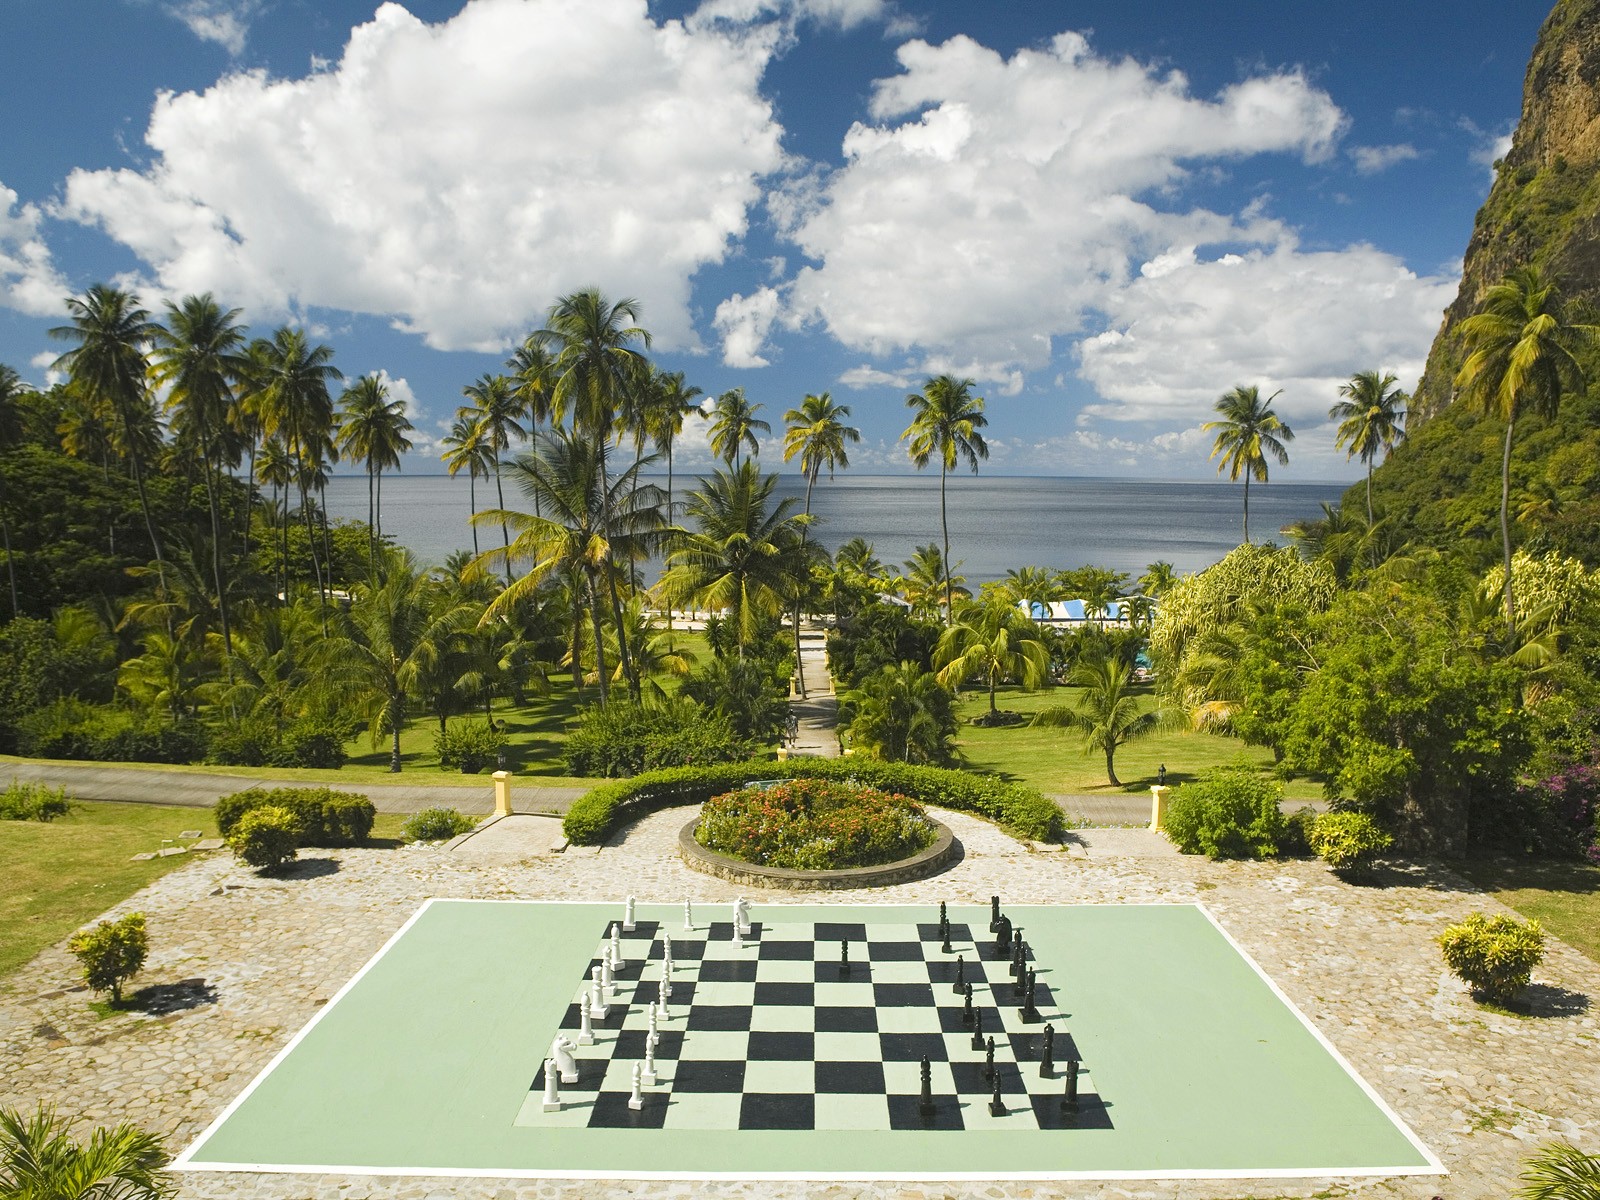 plantation, Lucia, Chess, Board Wallpaper